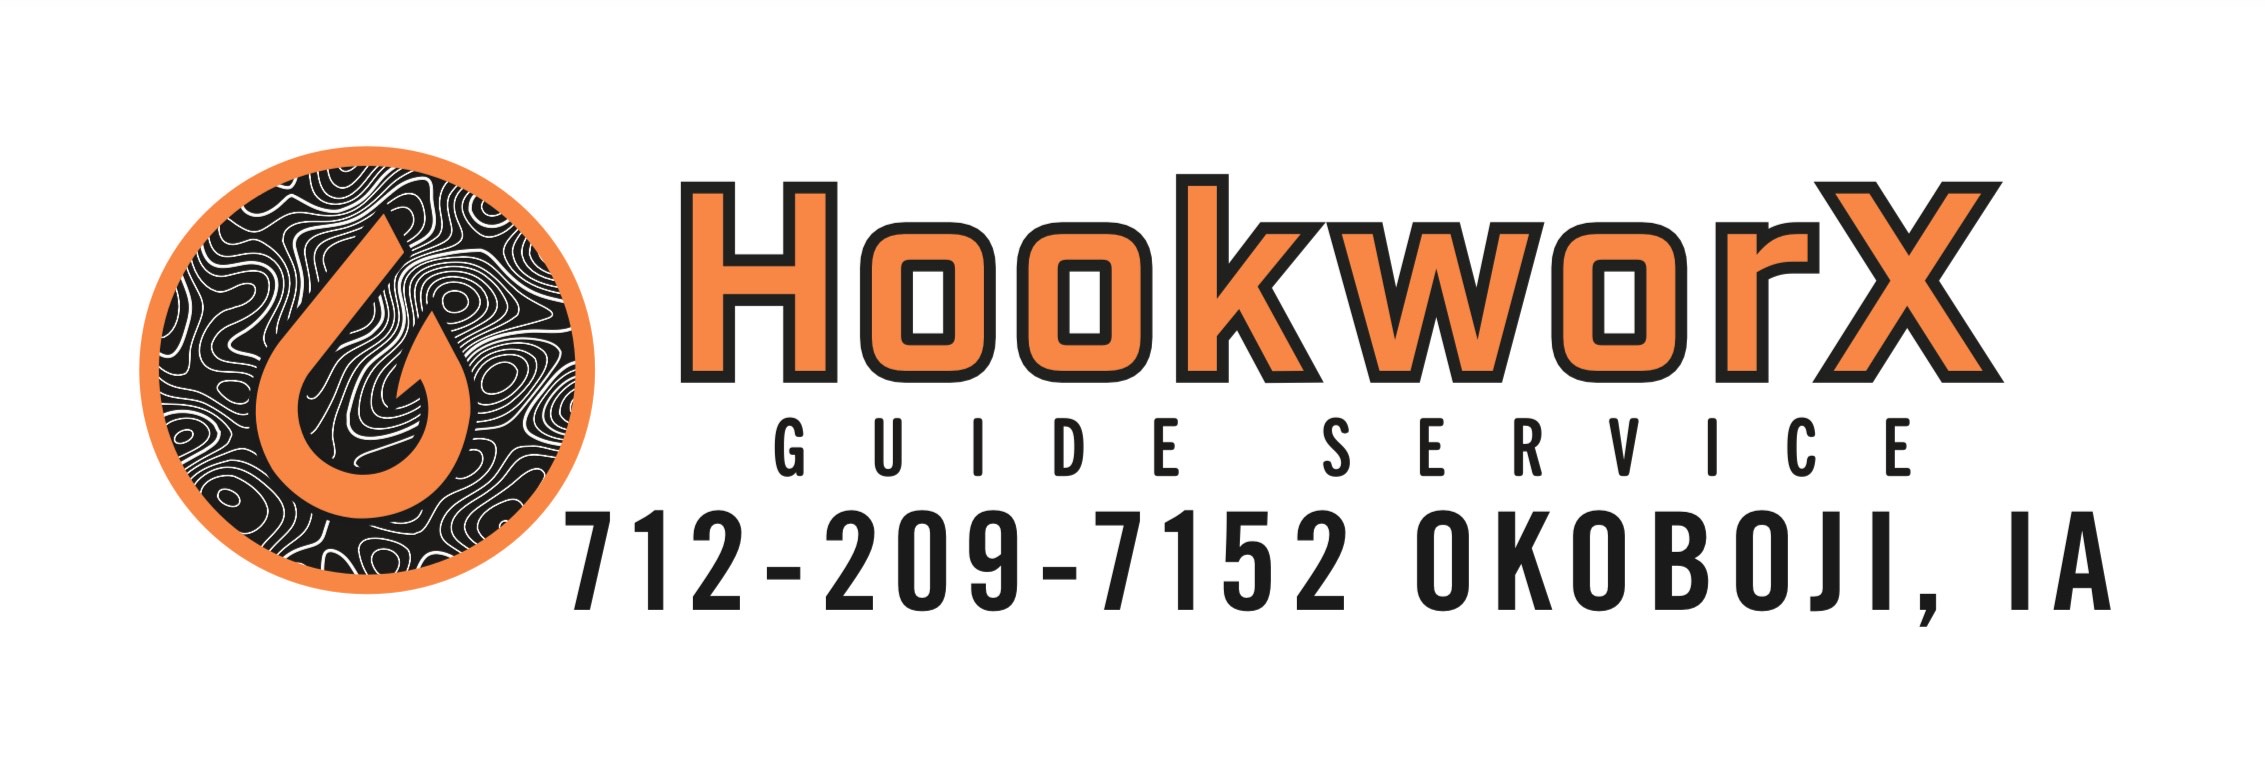 Hookworx Guide Service